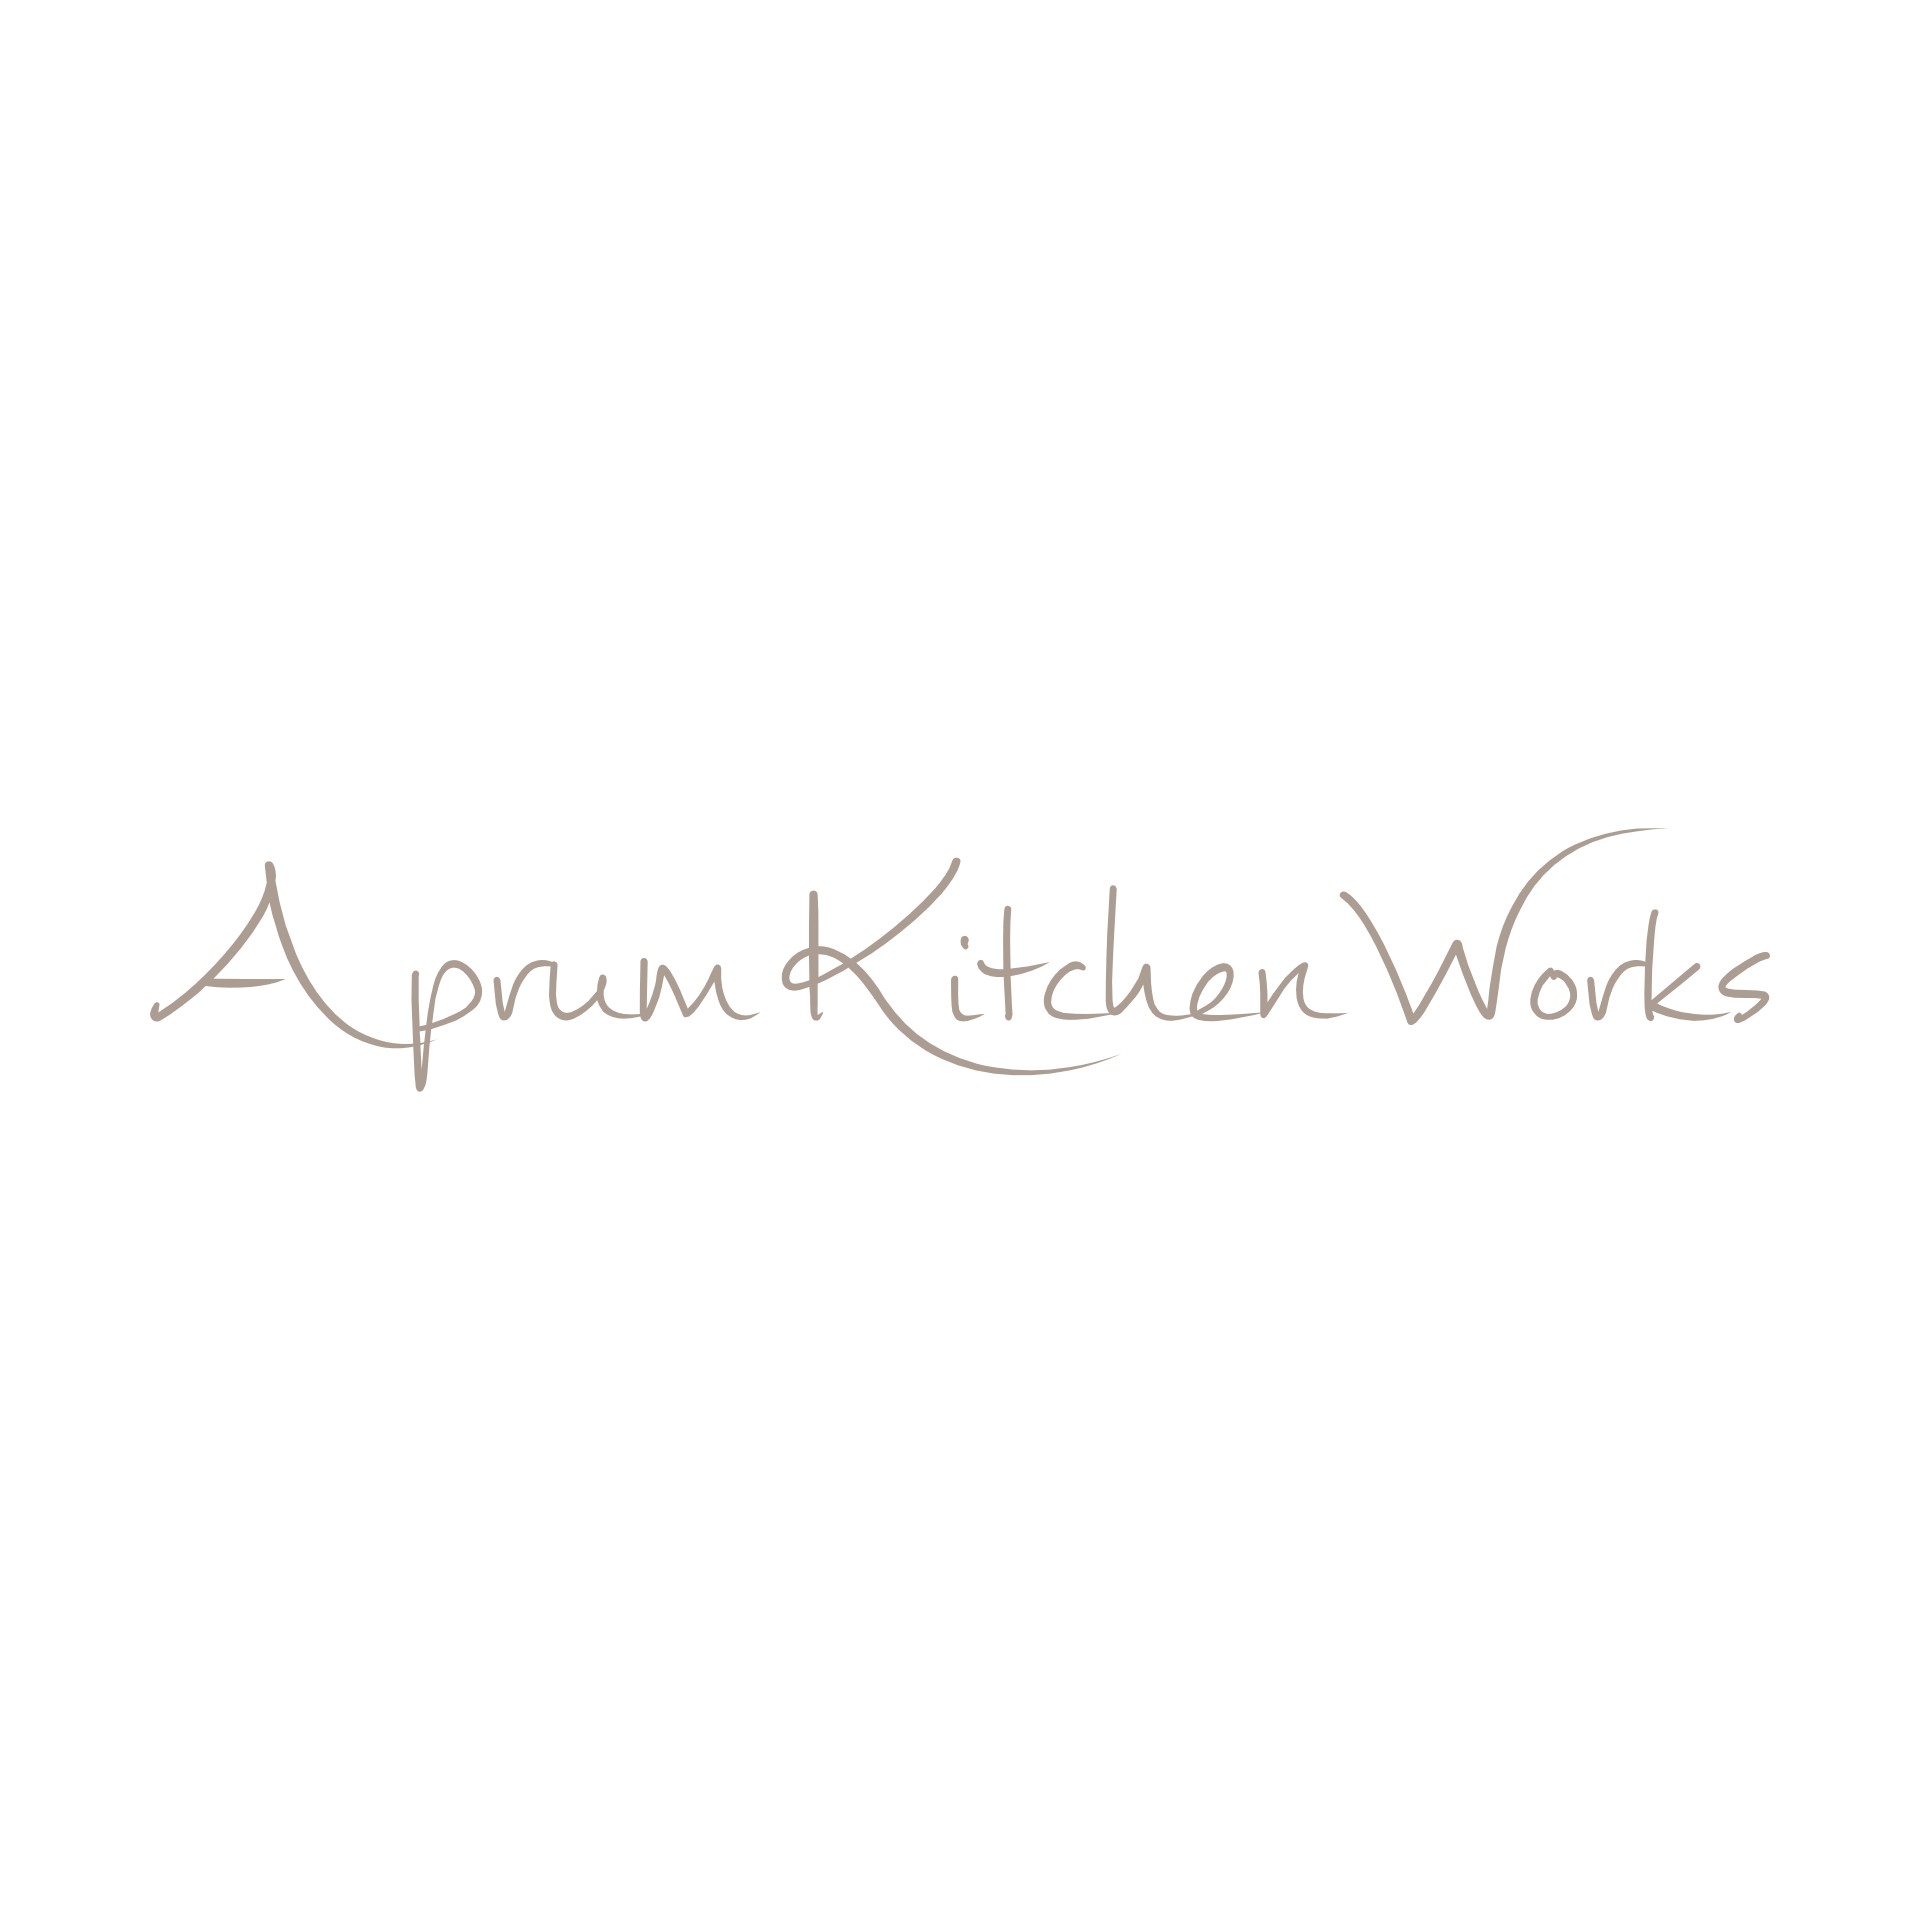 Aprum Kitchen Works